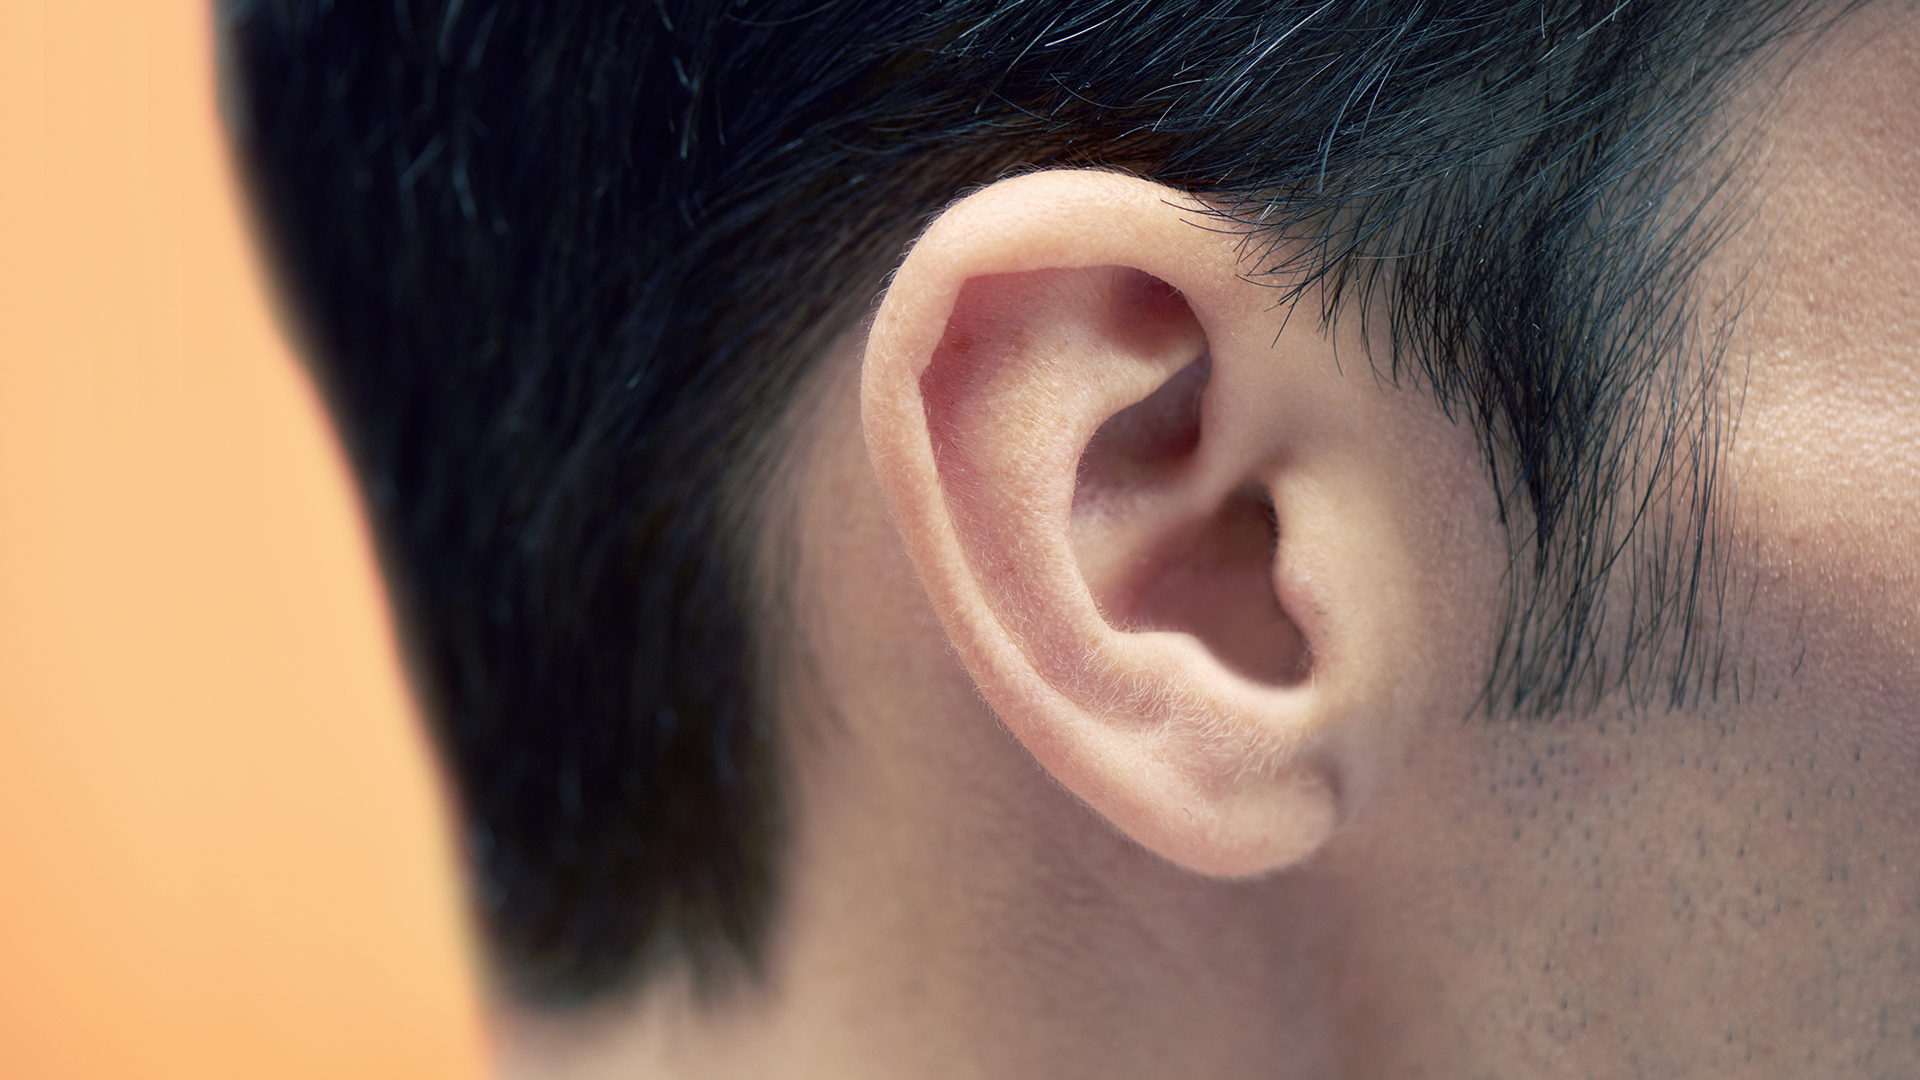 El espiráculo evolucionó hasta convertirse en el oído de los tetrápodos modernos y finalmente se convirtió en el canal auditivo utilizado para transmitir el sonido al cerebro a través de los diminutos huesos del oído interno. Esta función se ha mantenido a lo largo de la evolución hasta los humanos
(Getty Images)